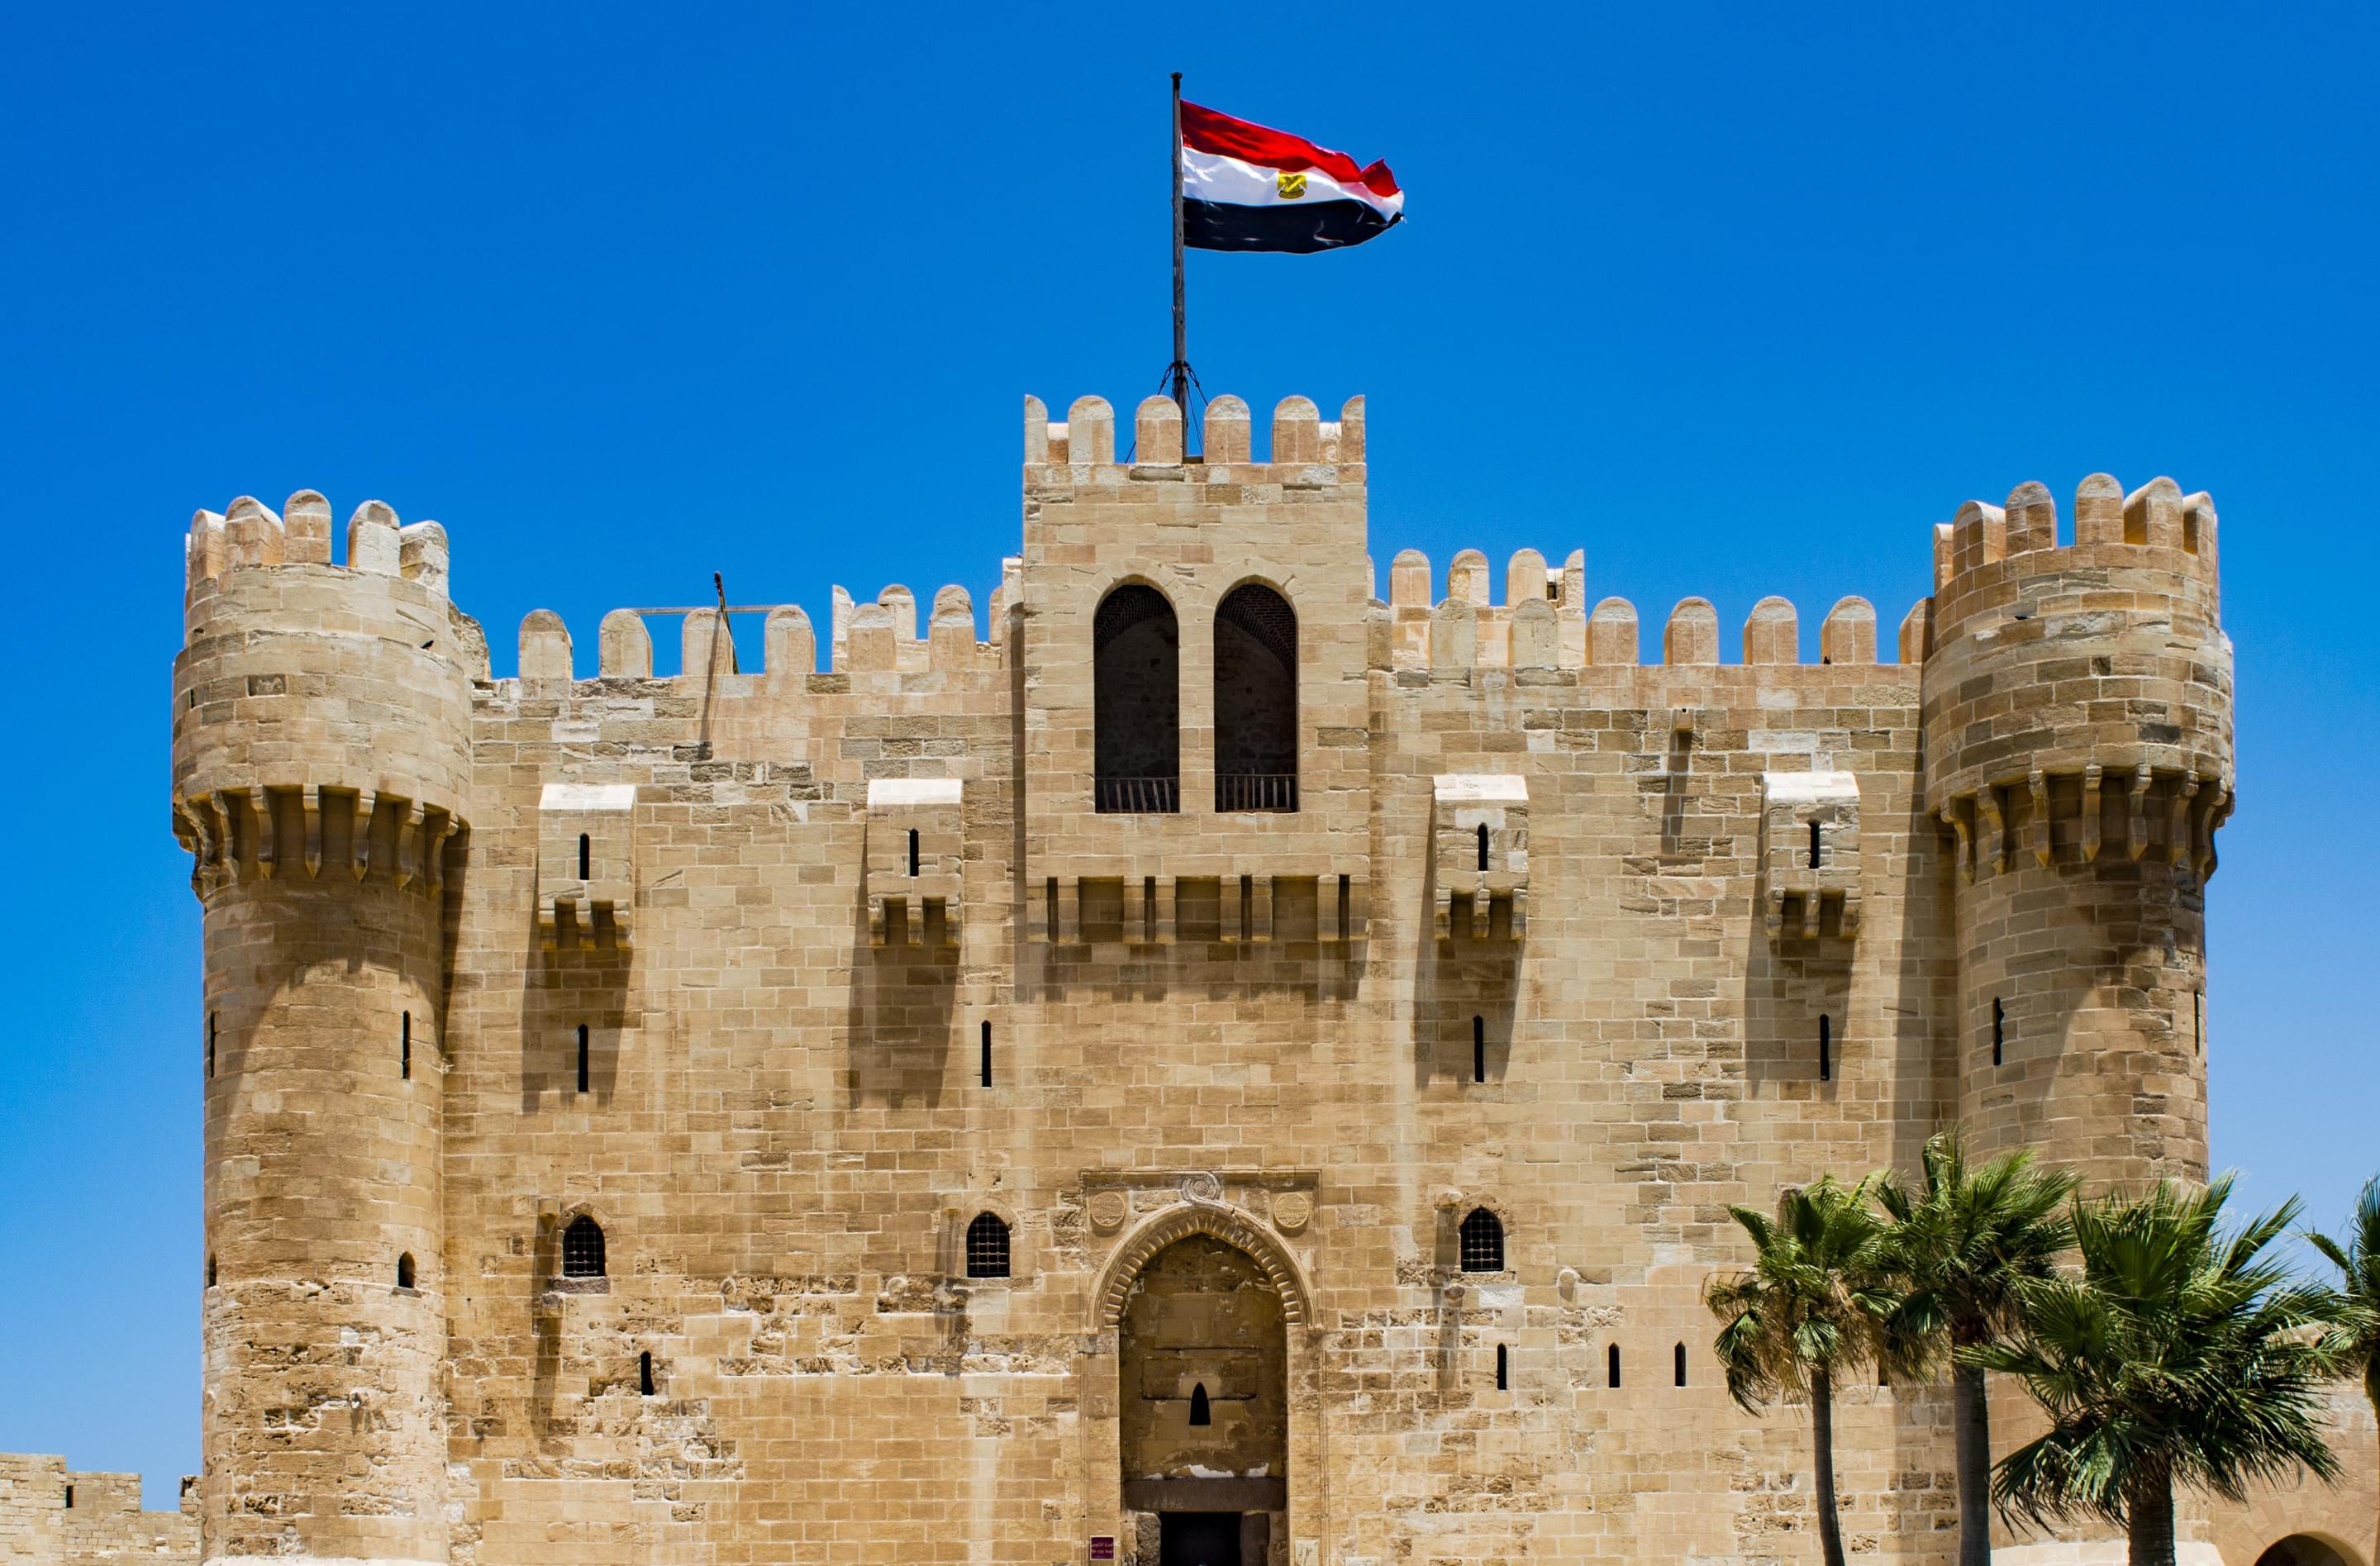 Citadel of Qaitbay Overview